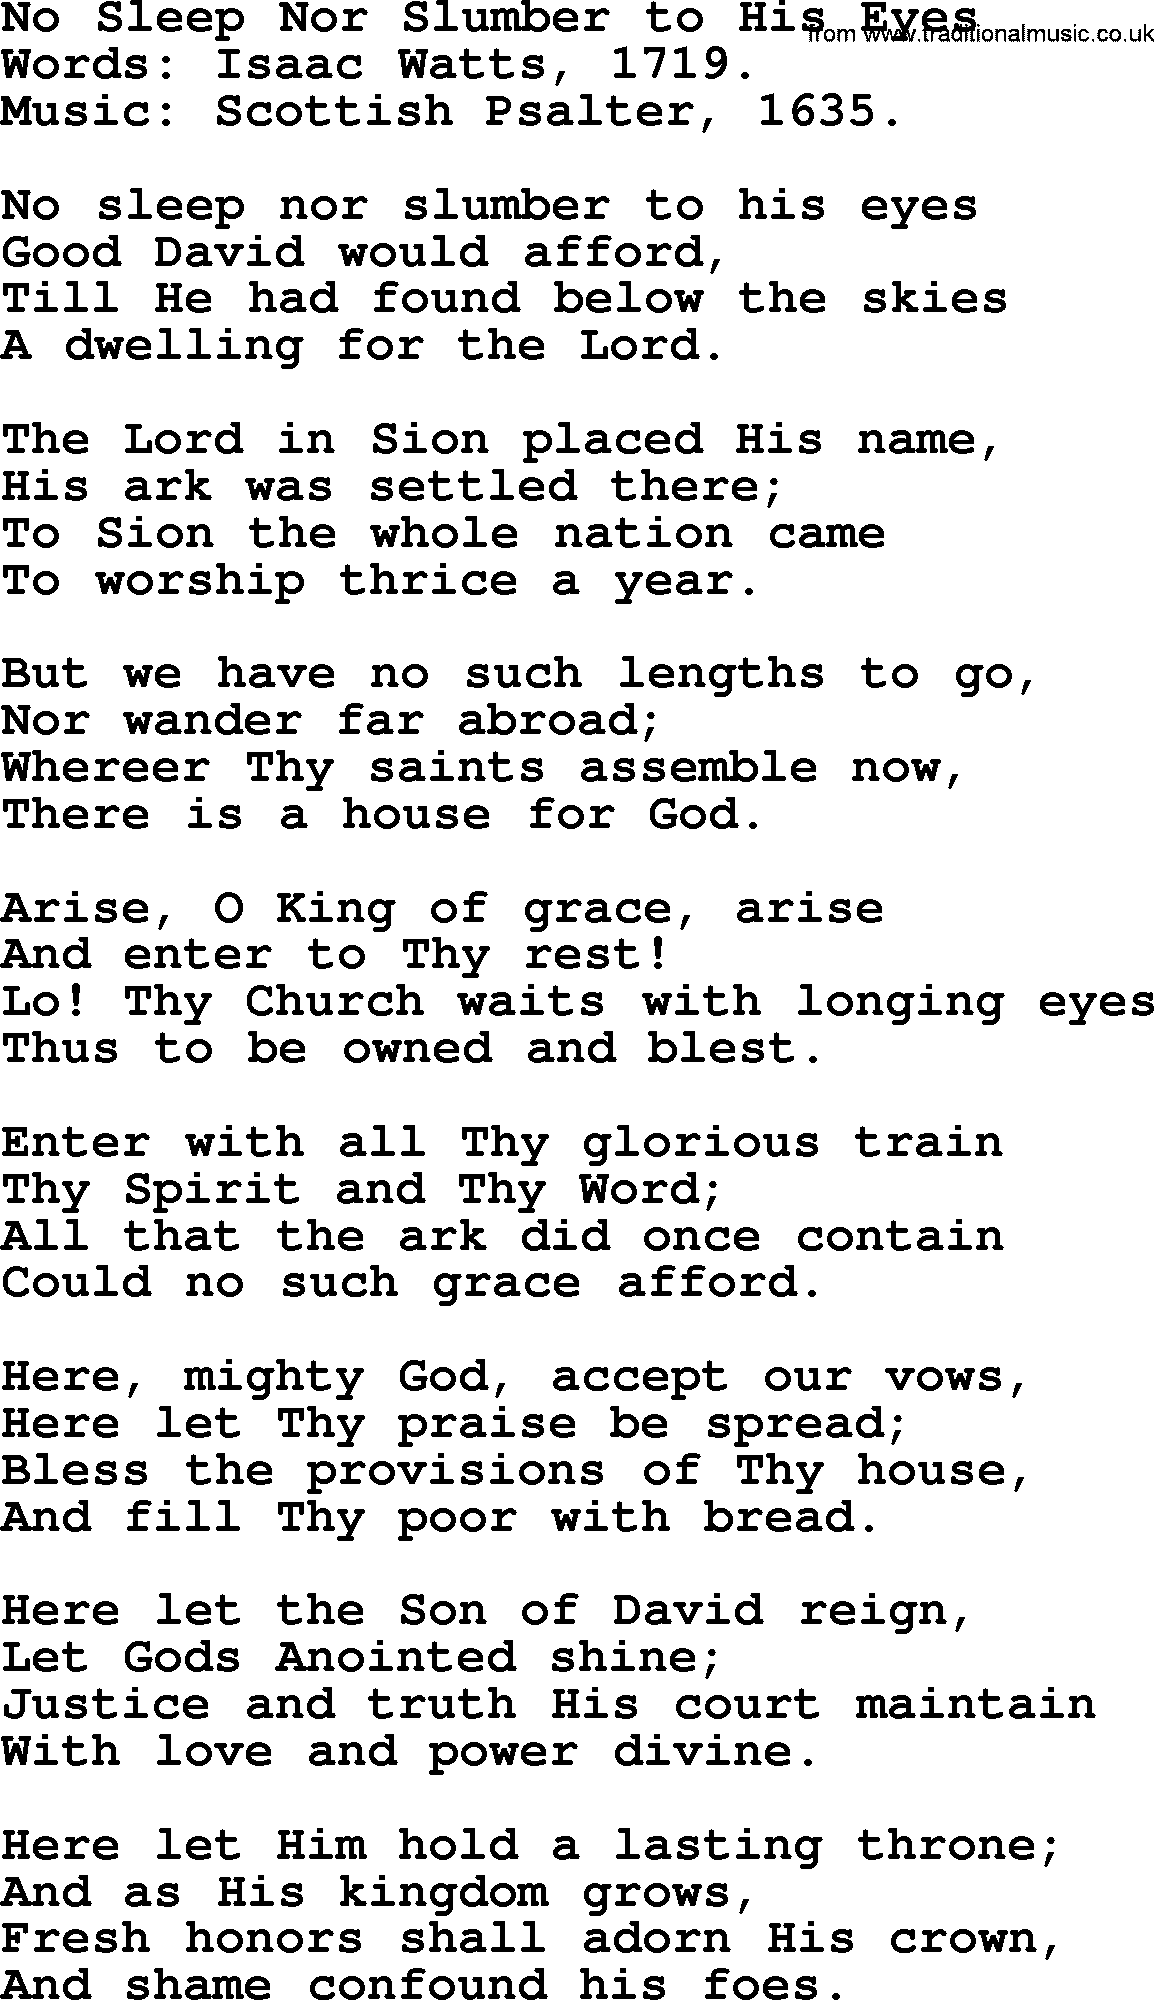 Isaac Watts Christian hymn: No Sleep Nor Slumber to His Eyes- lyricss